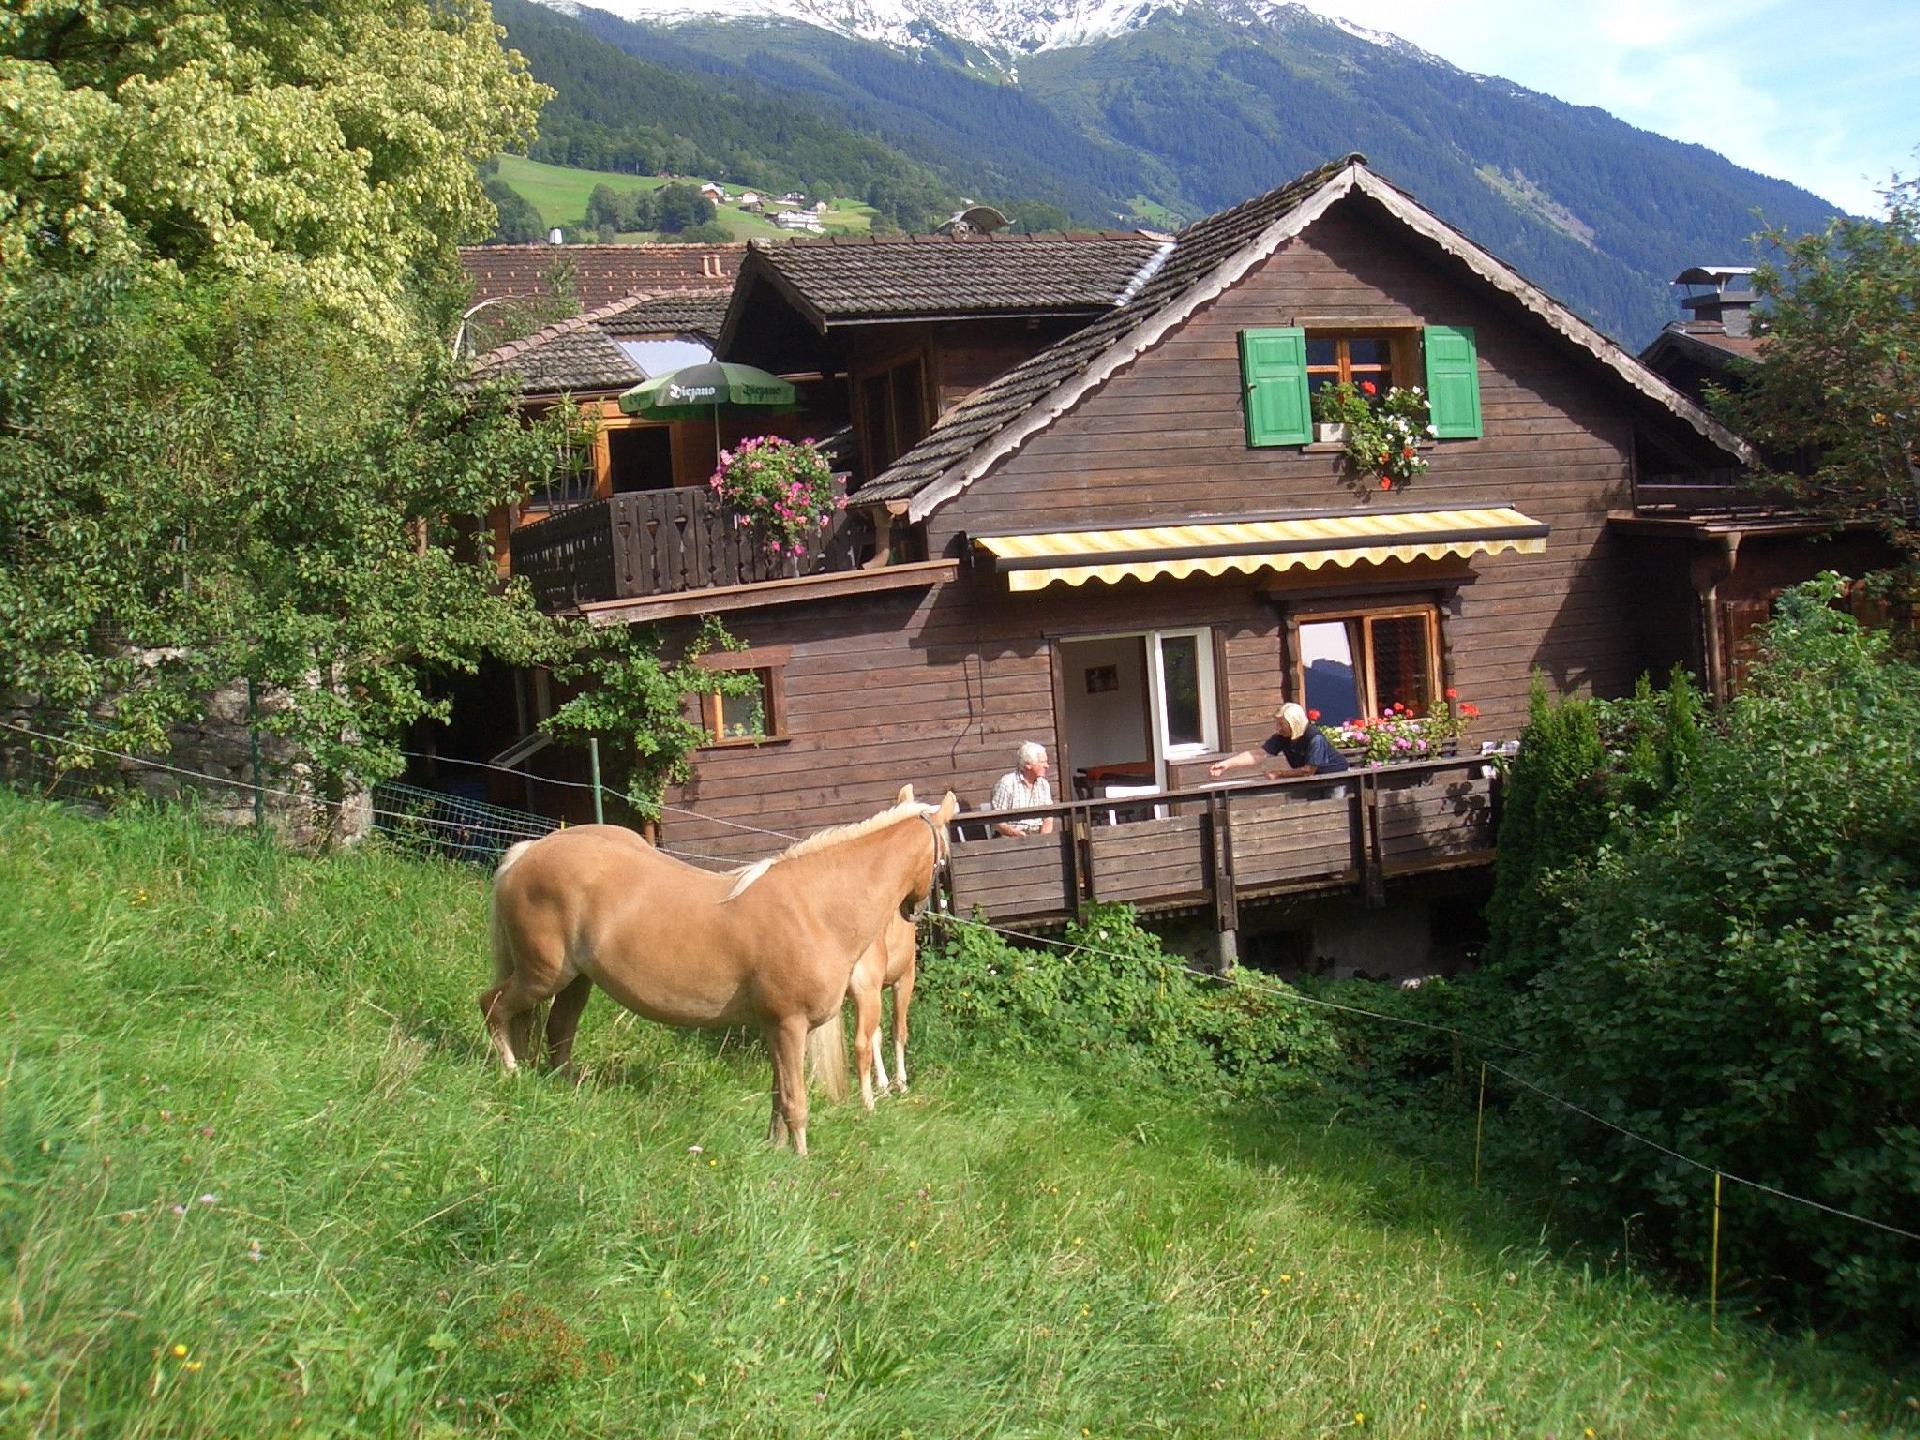 Romantisches Chalet in den Bergen - Montafon Ö Ferienhaus in Österreich